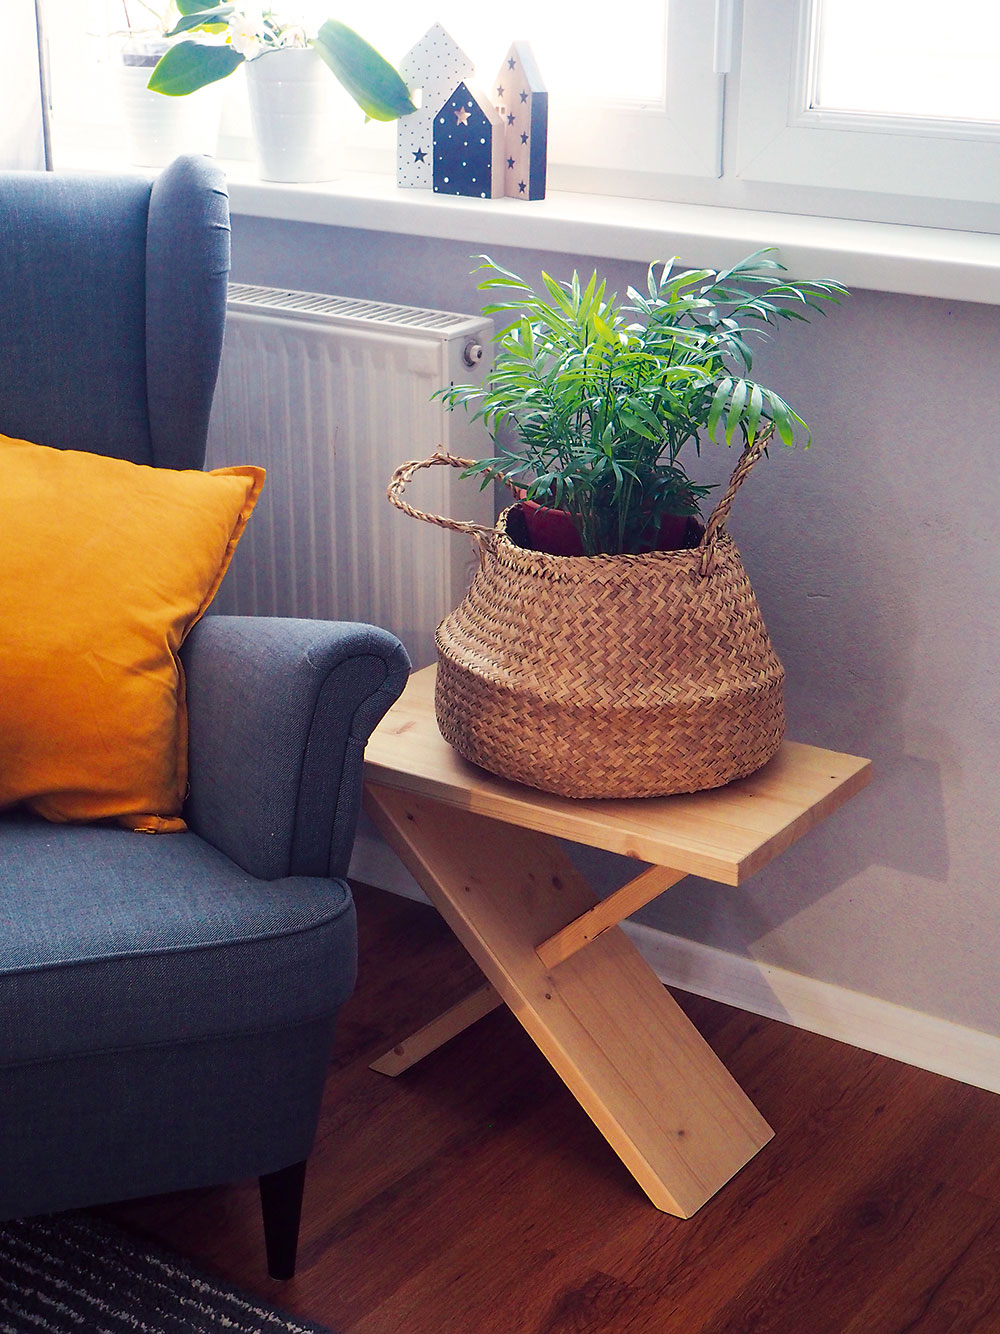 Univerzálnu stoličku ľahko vyrobíte z odrezkov, ktorá udrží malých aj veľkých a splní účel v každej miestnosti. Dokonca ju môžete využívať aj ako podstavec pod izbové rastliny.